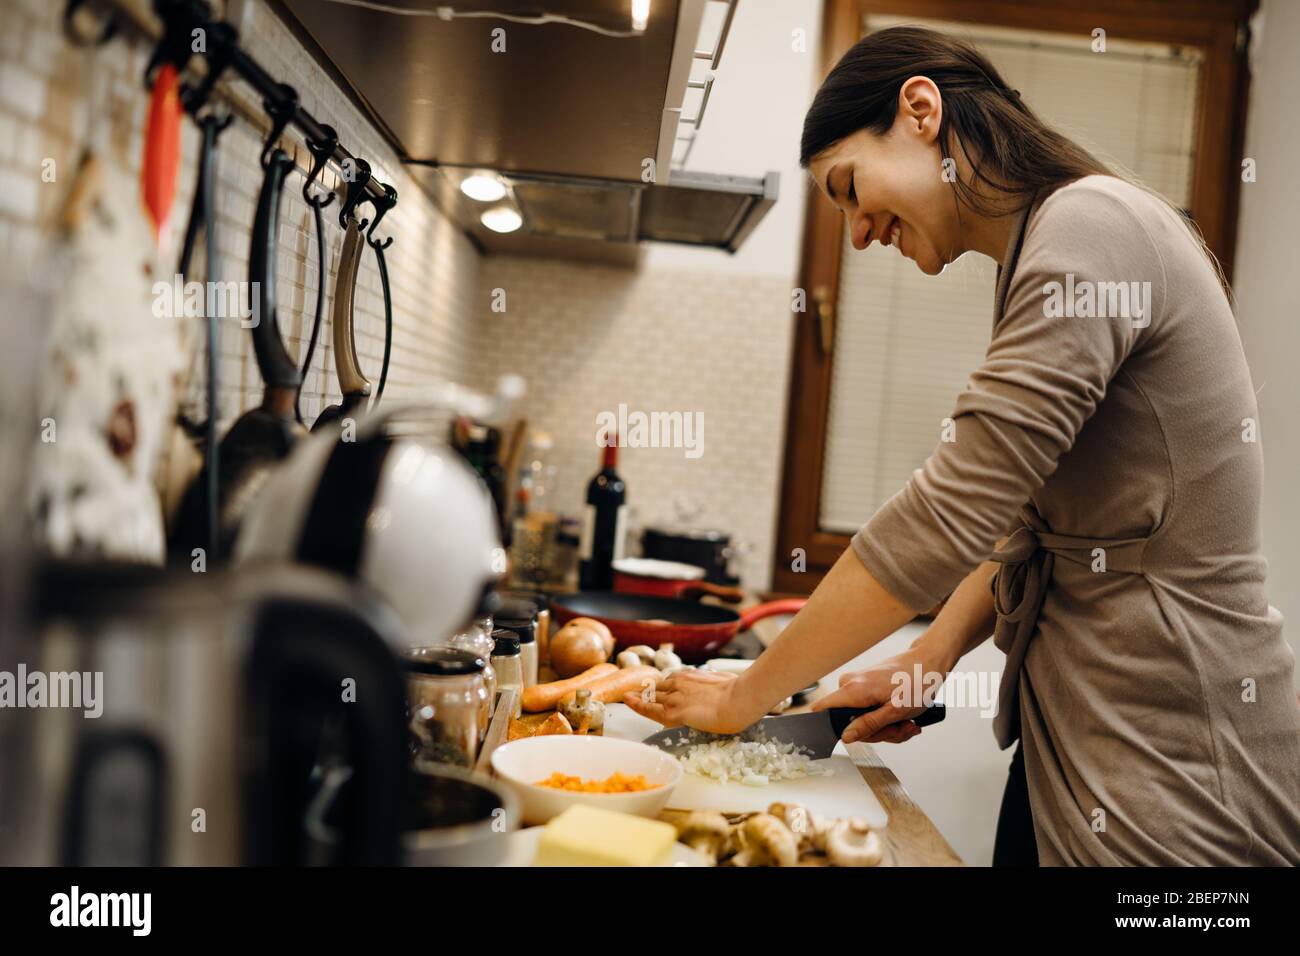 Junge Hausfrau Anfänger kochen Schneiden Zwiebel.Schneiden Zwiebeln auf einem Schneidebrett.Schneiden, würfeln und zerhacken Zwiebel.Vorbereitung zum Kochen. Gesunde Ernährung und li Stockfoto